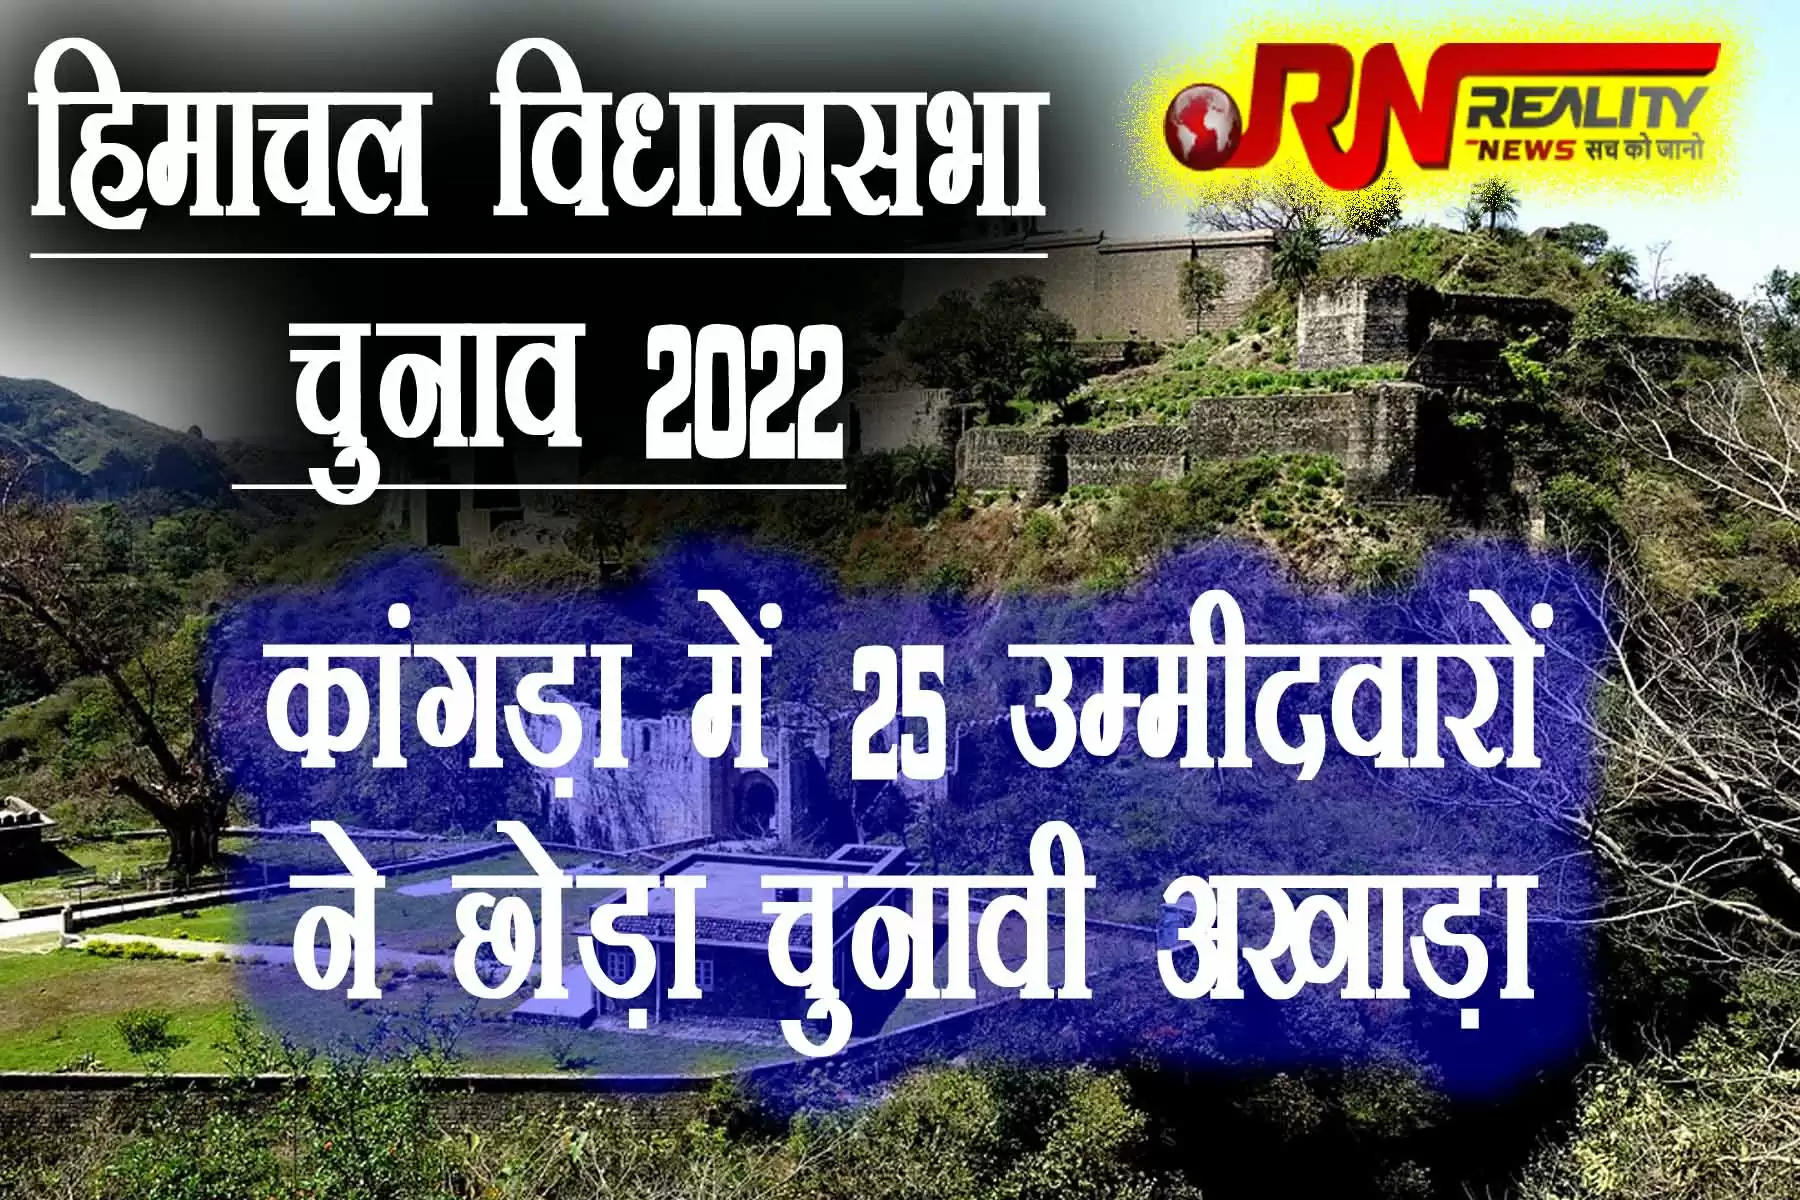  हिमाचल विधानसभा के आम चुनावों को लेकर अब जिला कांगड़ा की 15 विधानसभा सीटों से 91 उम्मीदवार विधायक बनने के लिए चुनावी मैदान में हैं। शनिवार 29 अक्तूबर को नामांकन वापिस लेने की तिथि तक जिला कांगड़ा में 25 प्रत्याशी चुनावी अखाड़े से हट गए हैं। 